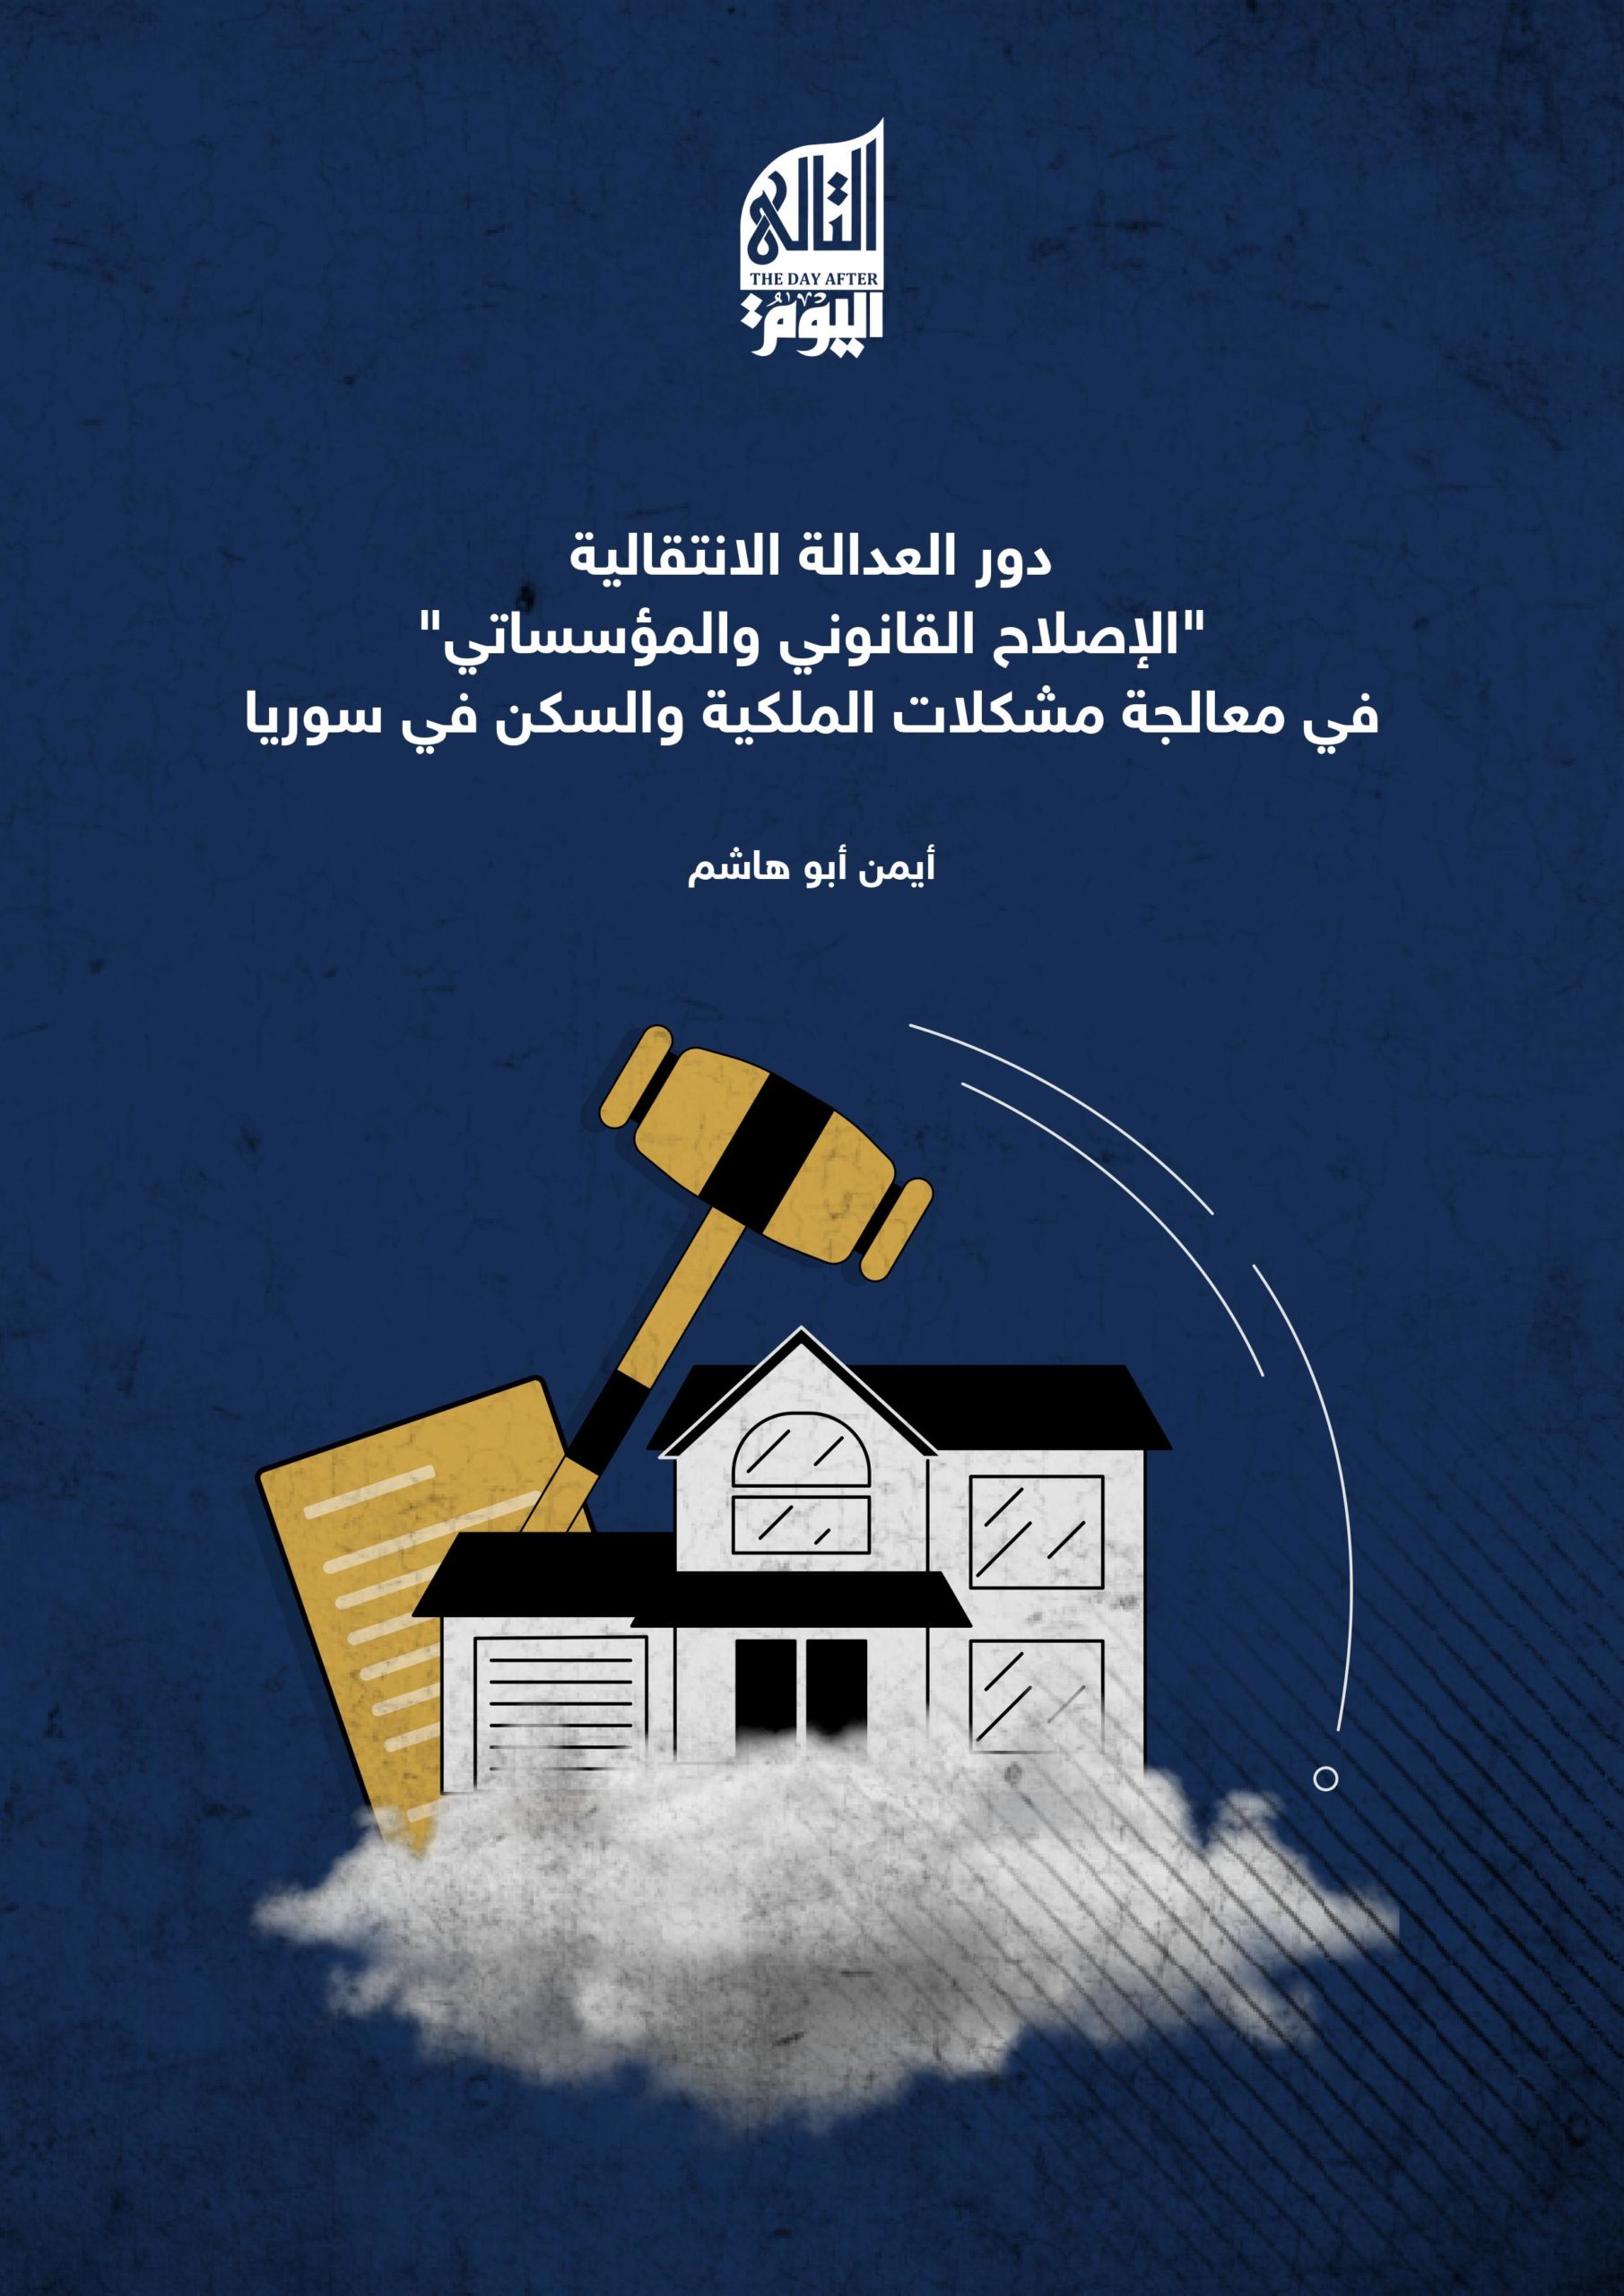 دور العدالة الانتقالية “الإصلاح القانوني والمؤسساتي” في معالجة مشكلات الملكية والسكن في سوريا